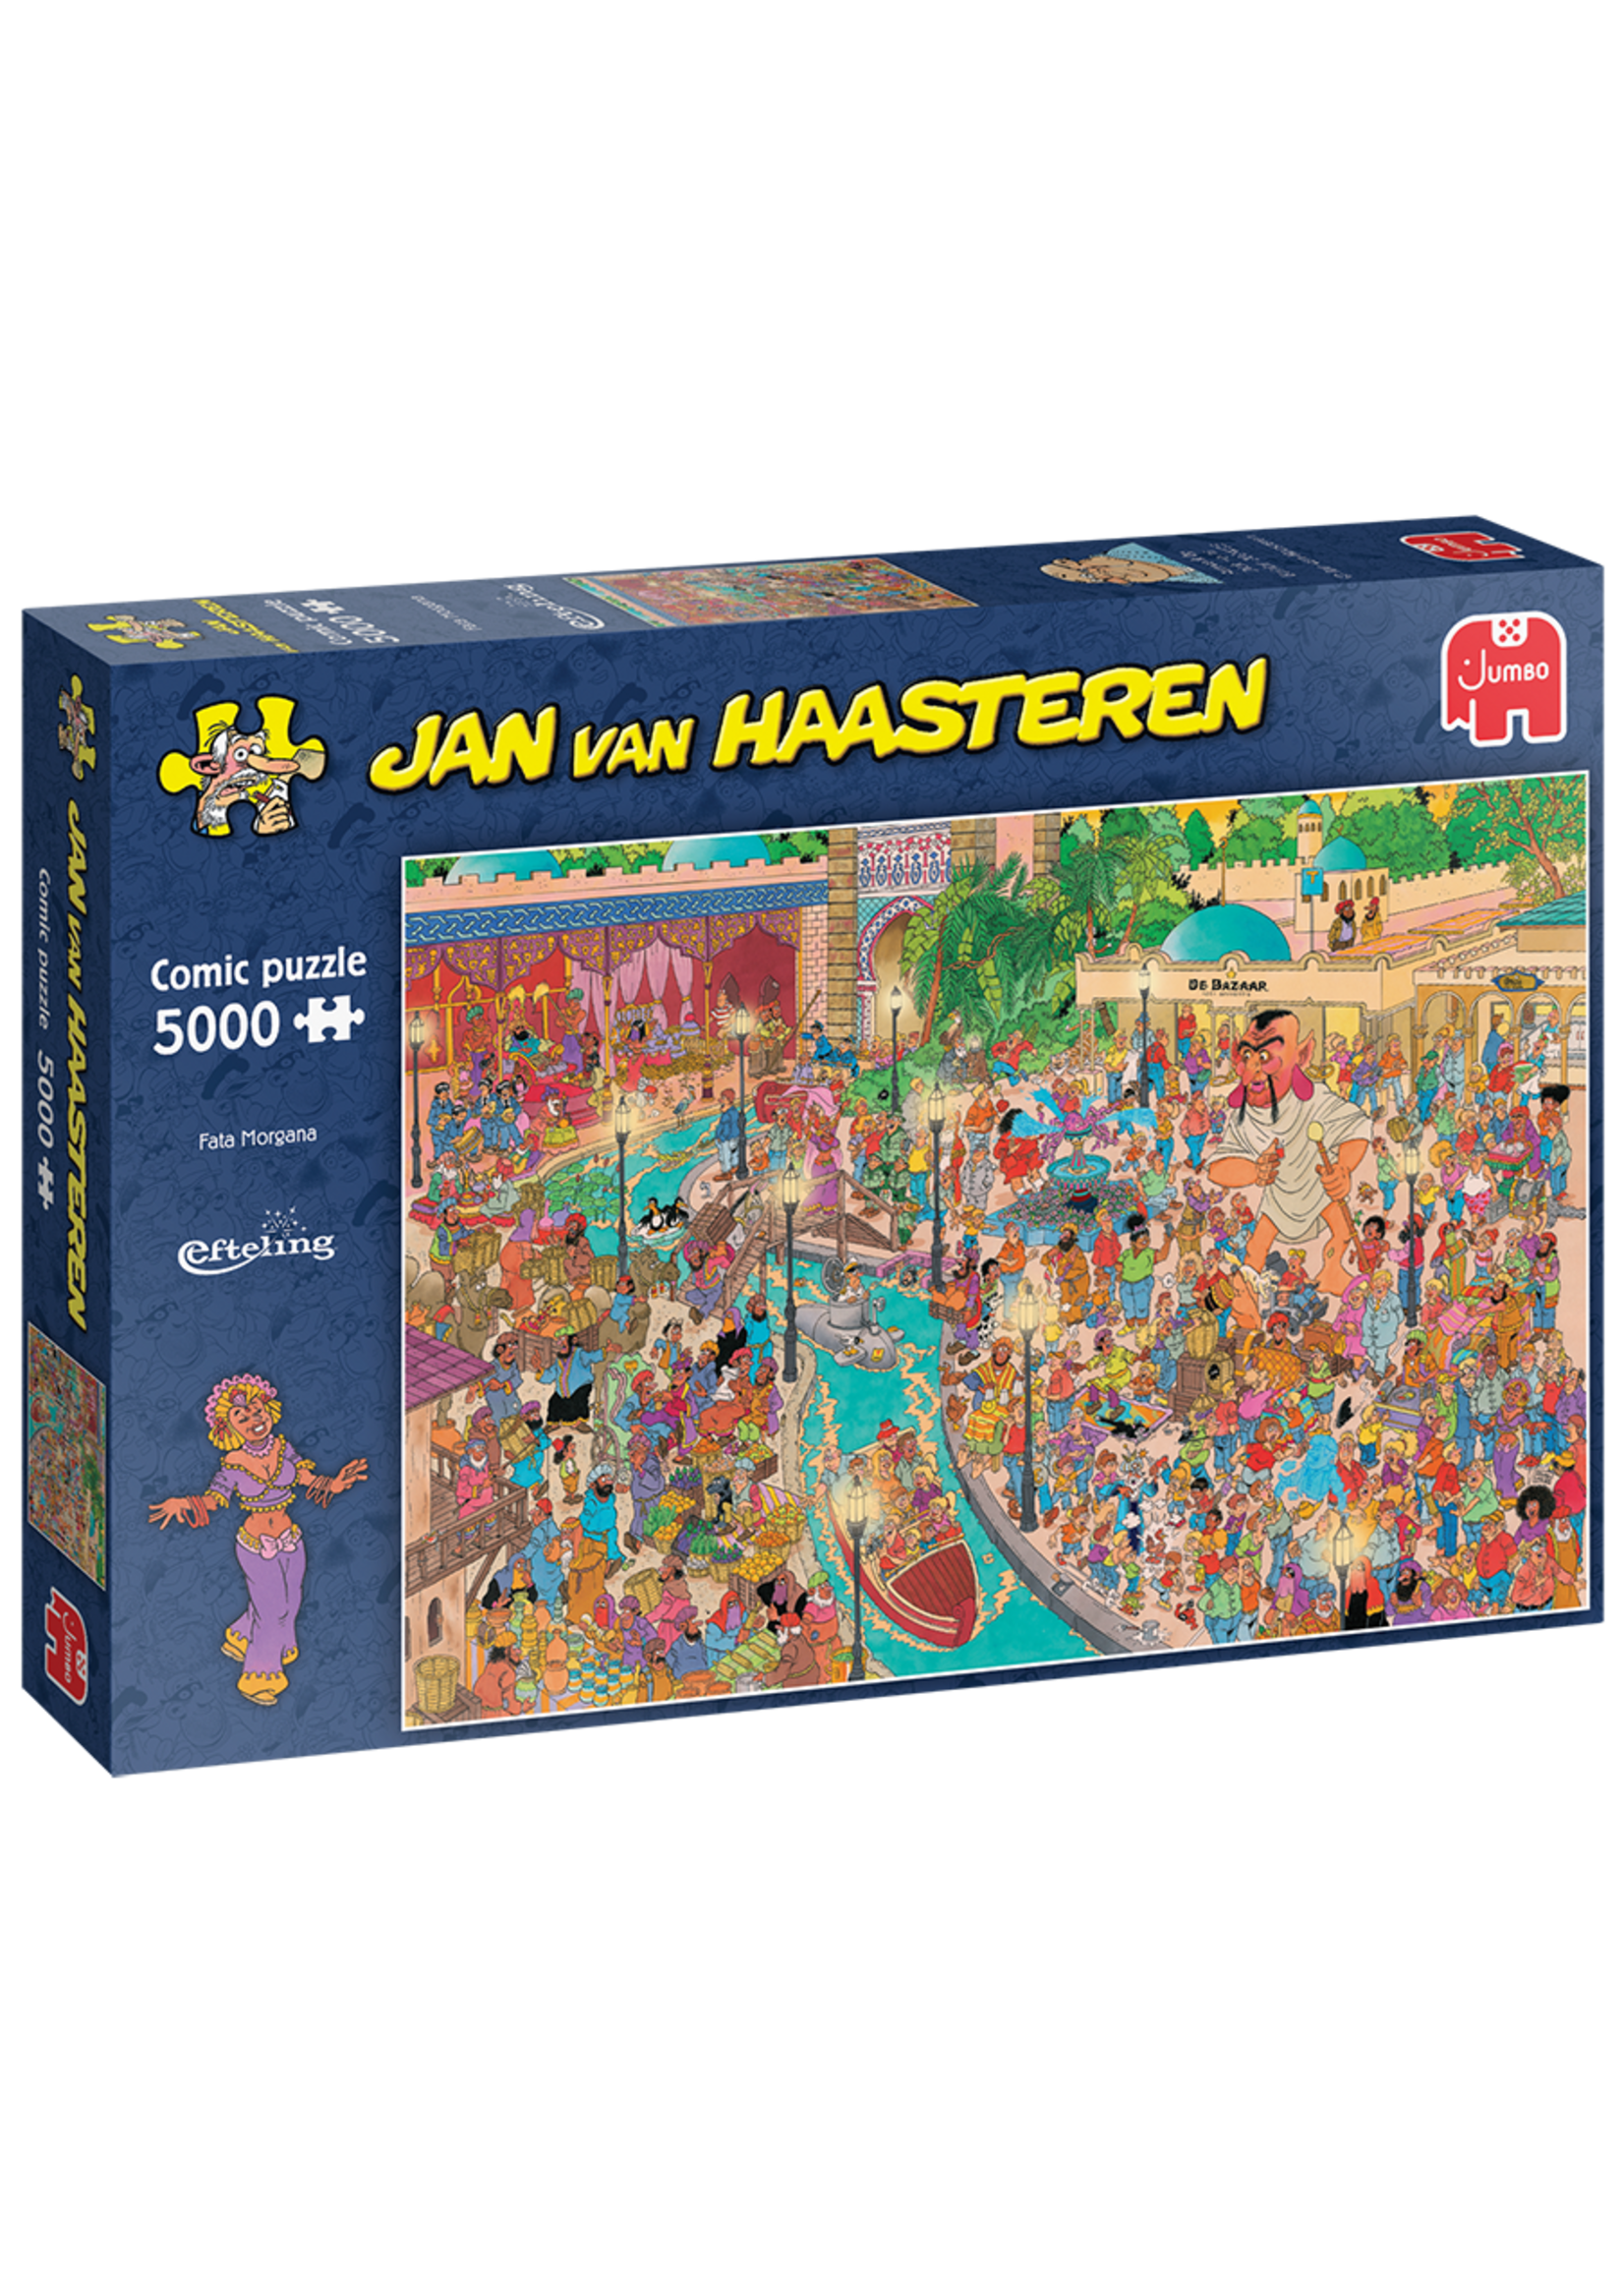 Jumbo PUZZEL Fata Morgana - Jan van Haasteren Efteling (5000)